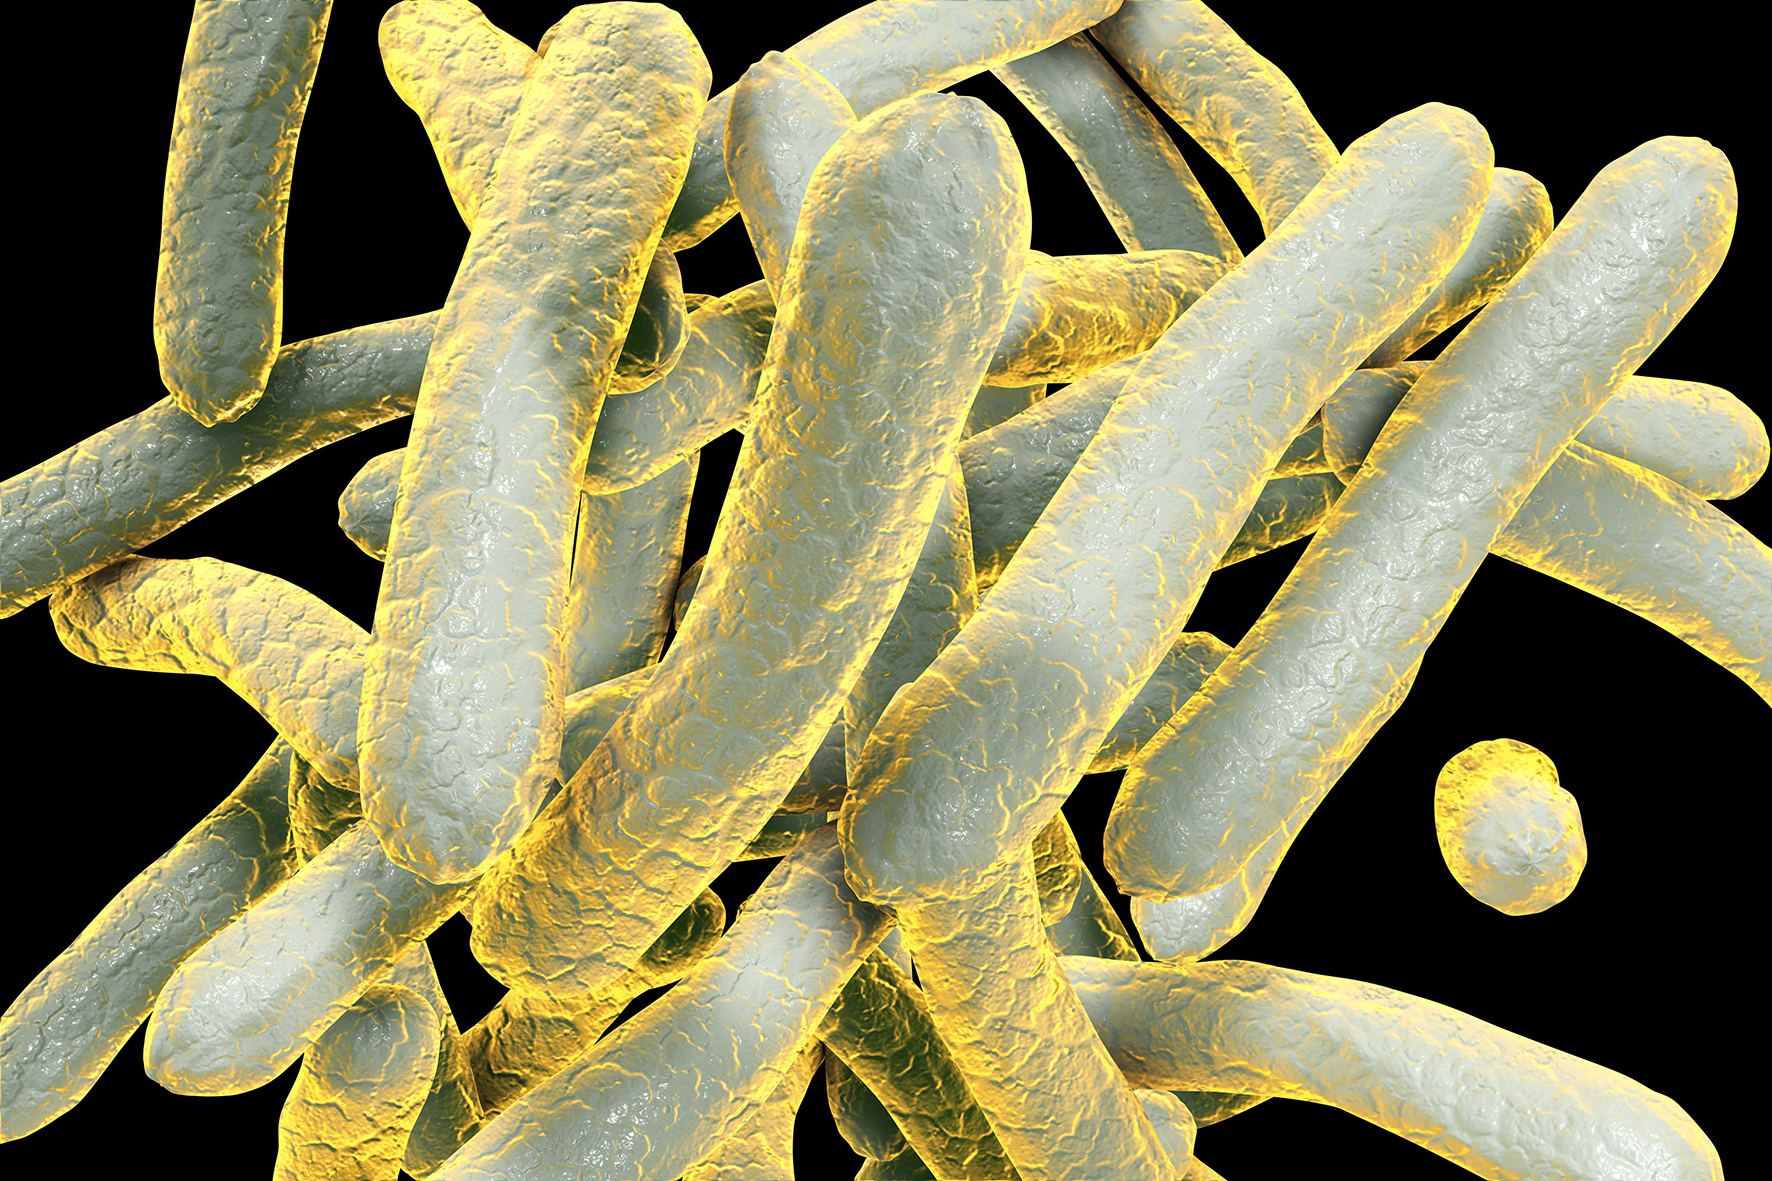 Tuberculosis cells